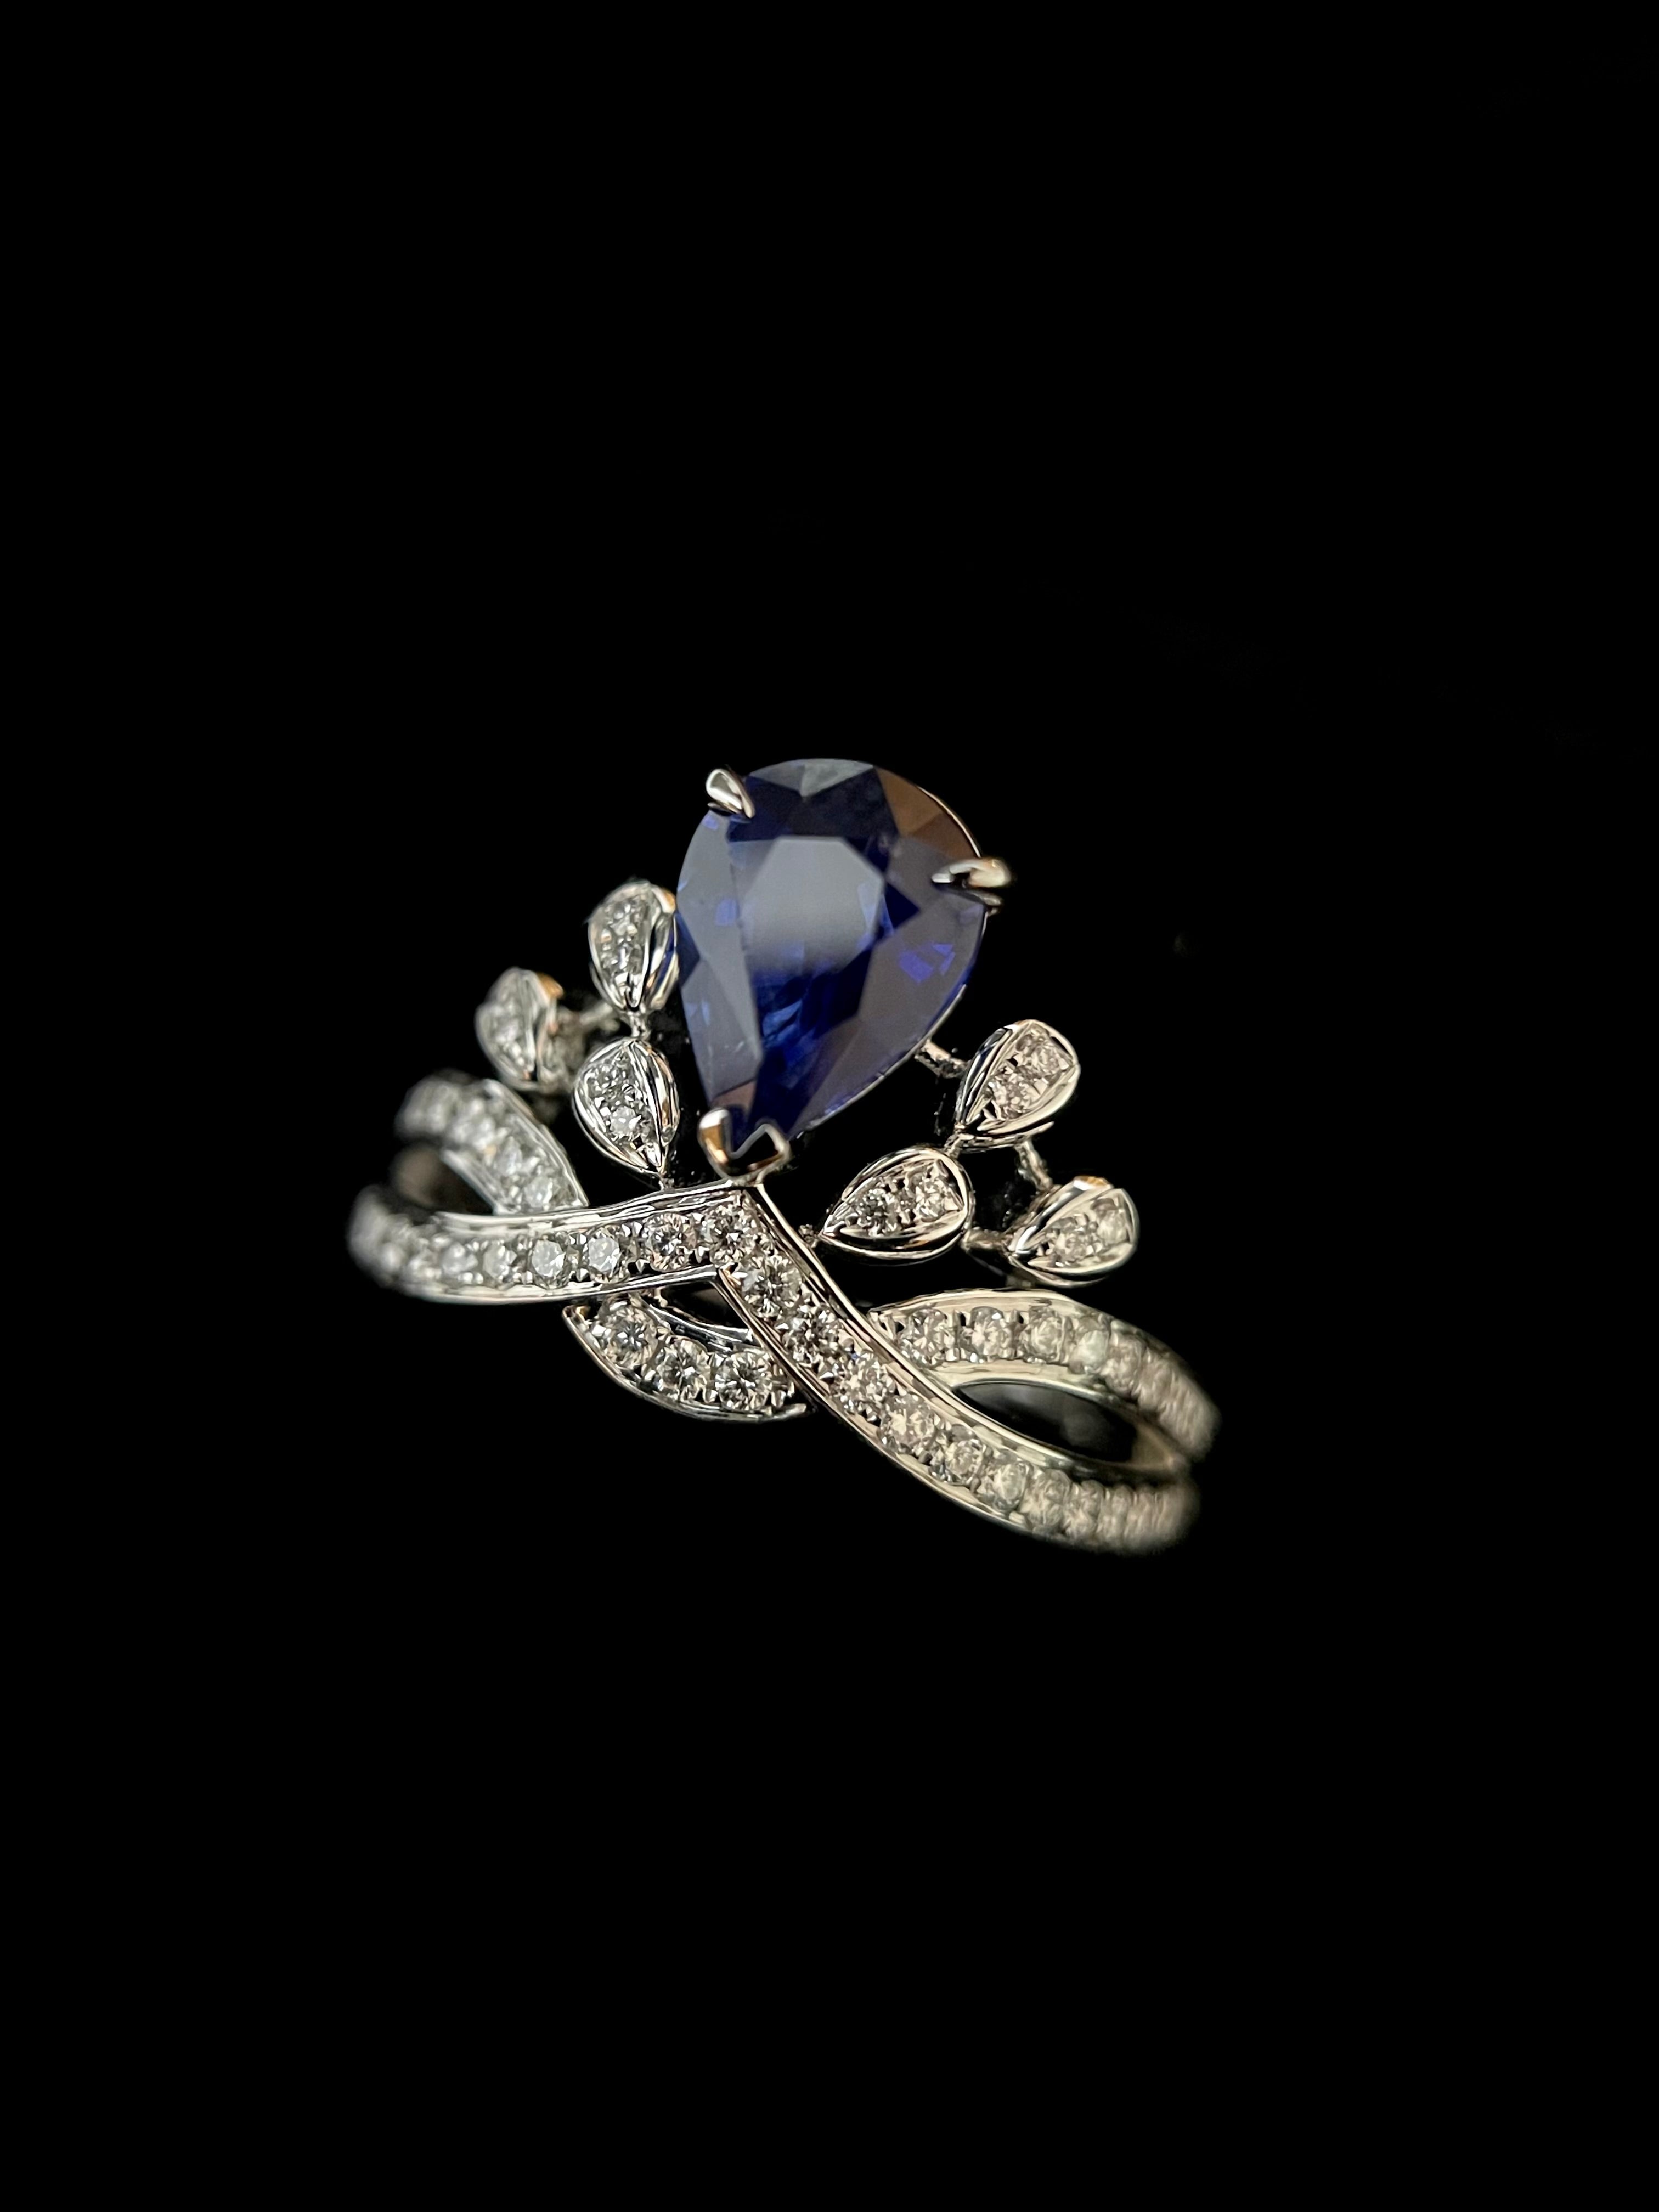 Sapphire Diamond Tiara Ring